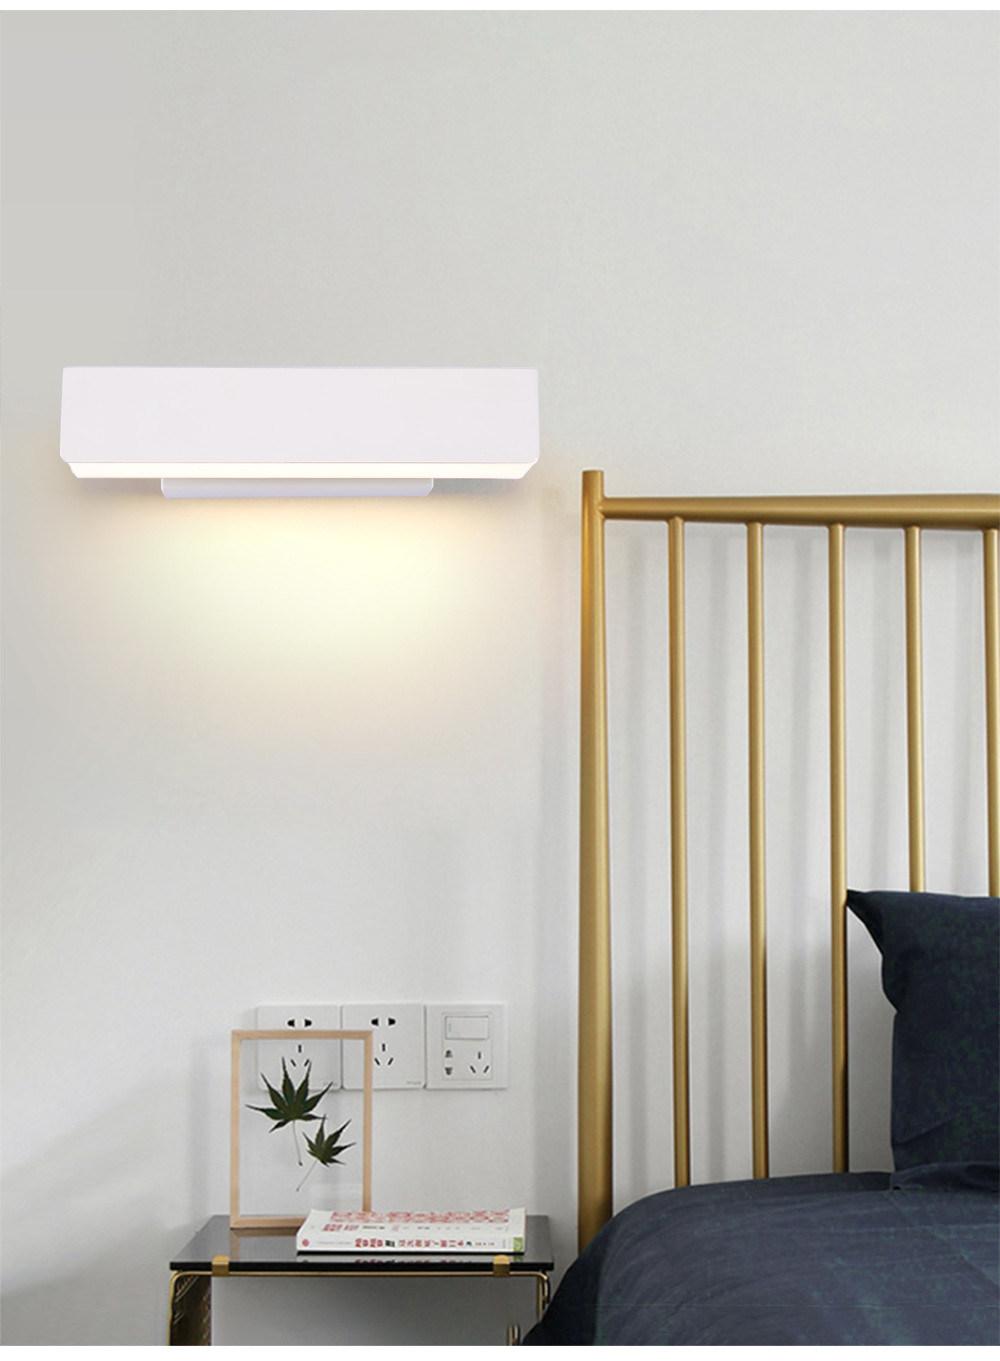 Wall Lamp for Corridor Aisle Balcony Bedside Study Living Room Bedroom Mirror LED Lighting 10cm 25cm 30cm Black/White